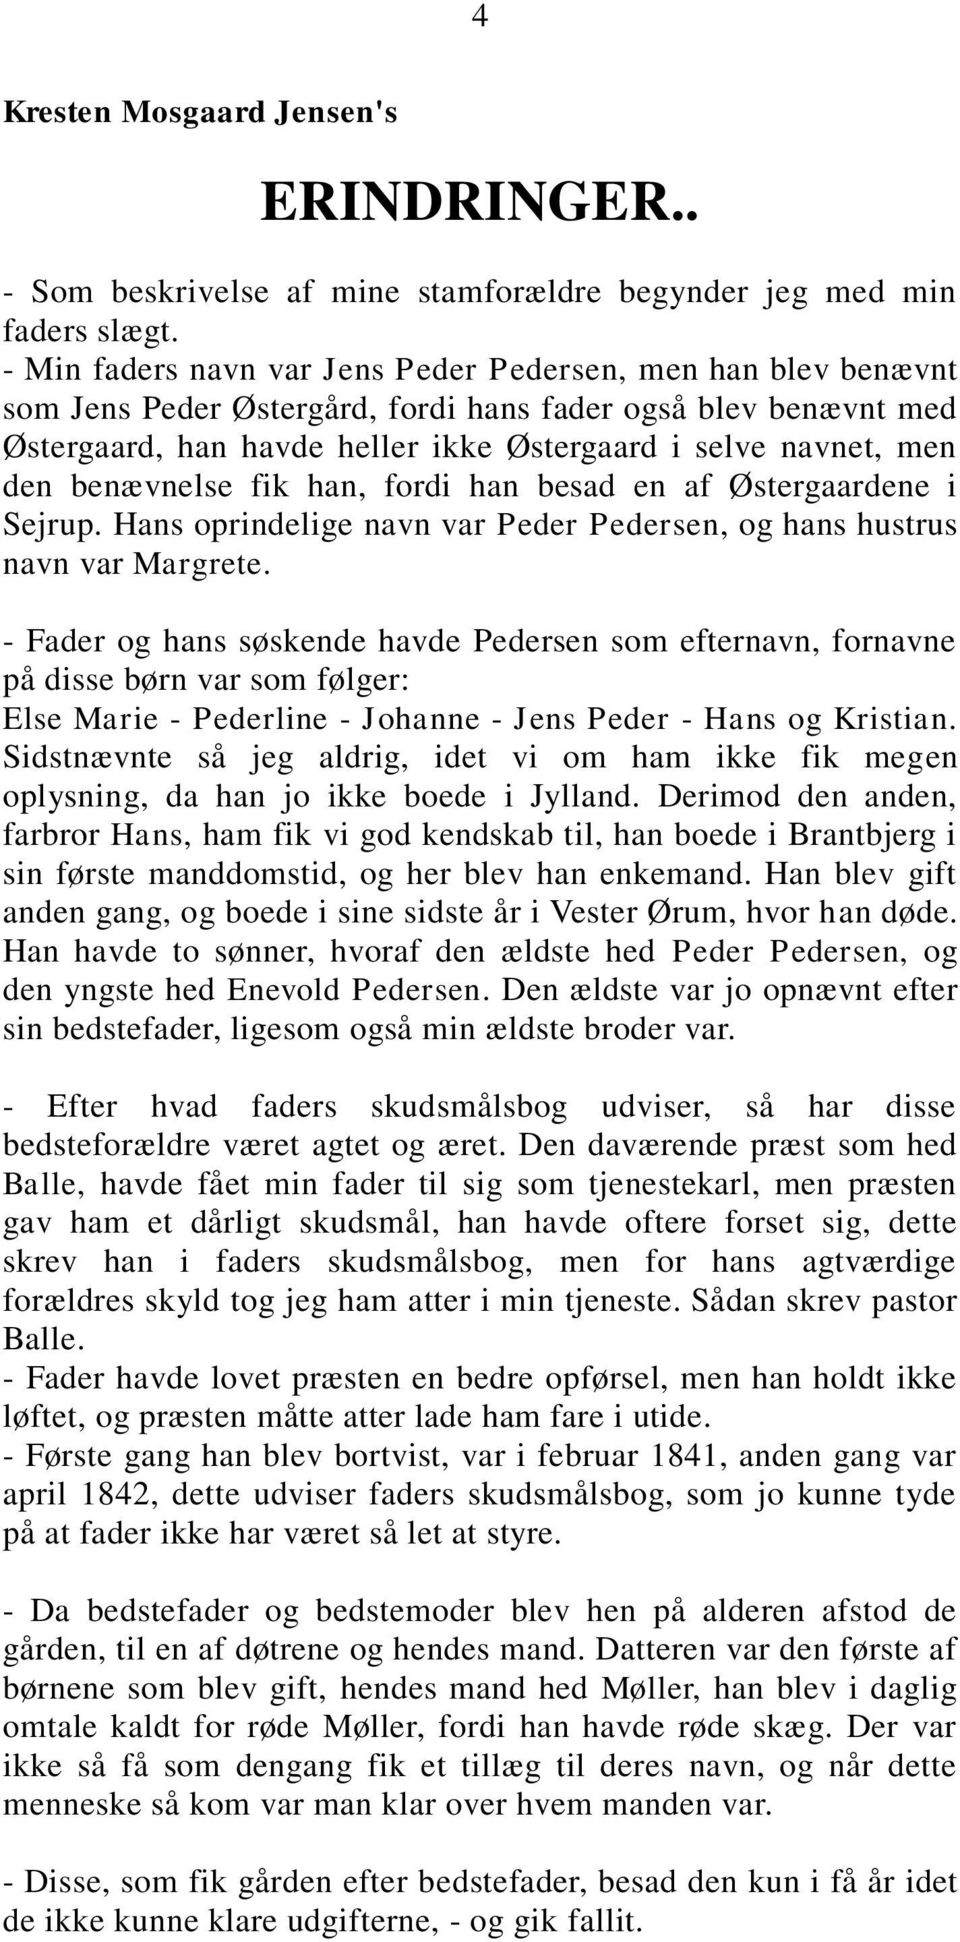 benævnelse fik han, fordi han besad en af Østergaardene i Sejrup. Hans oprindelige navn var Peder Pedersen, og hans hustrus navn var Margrete.